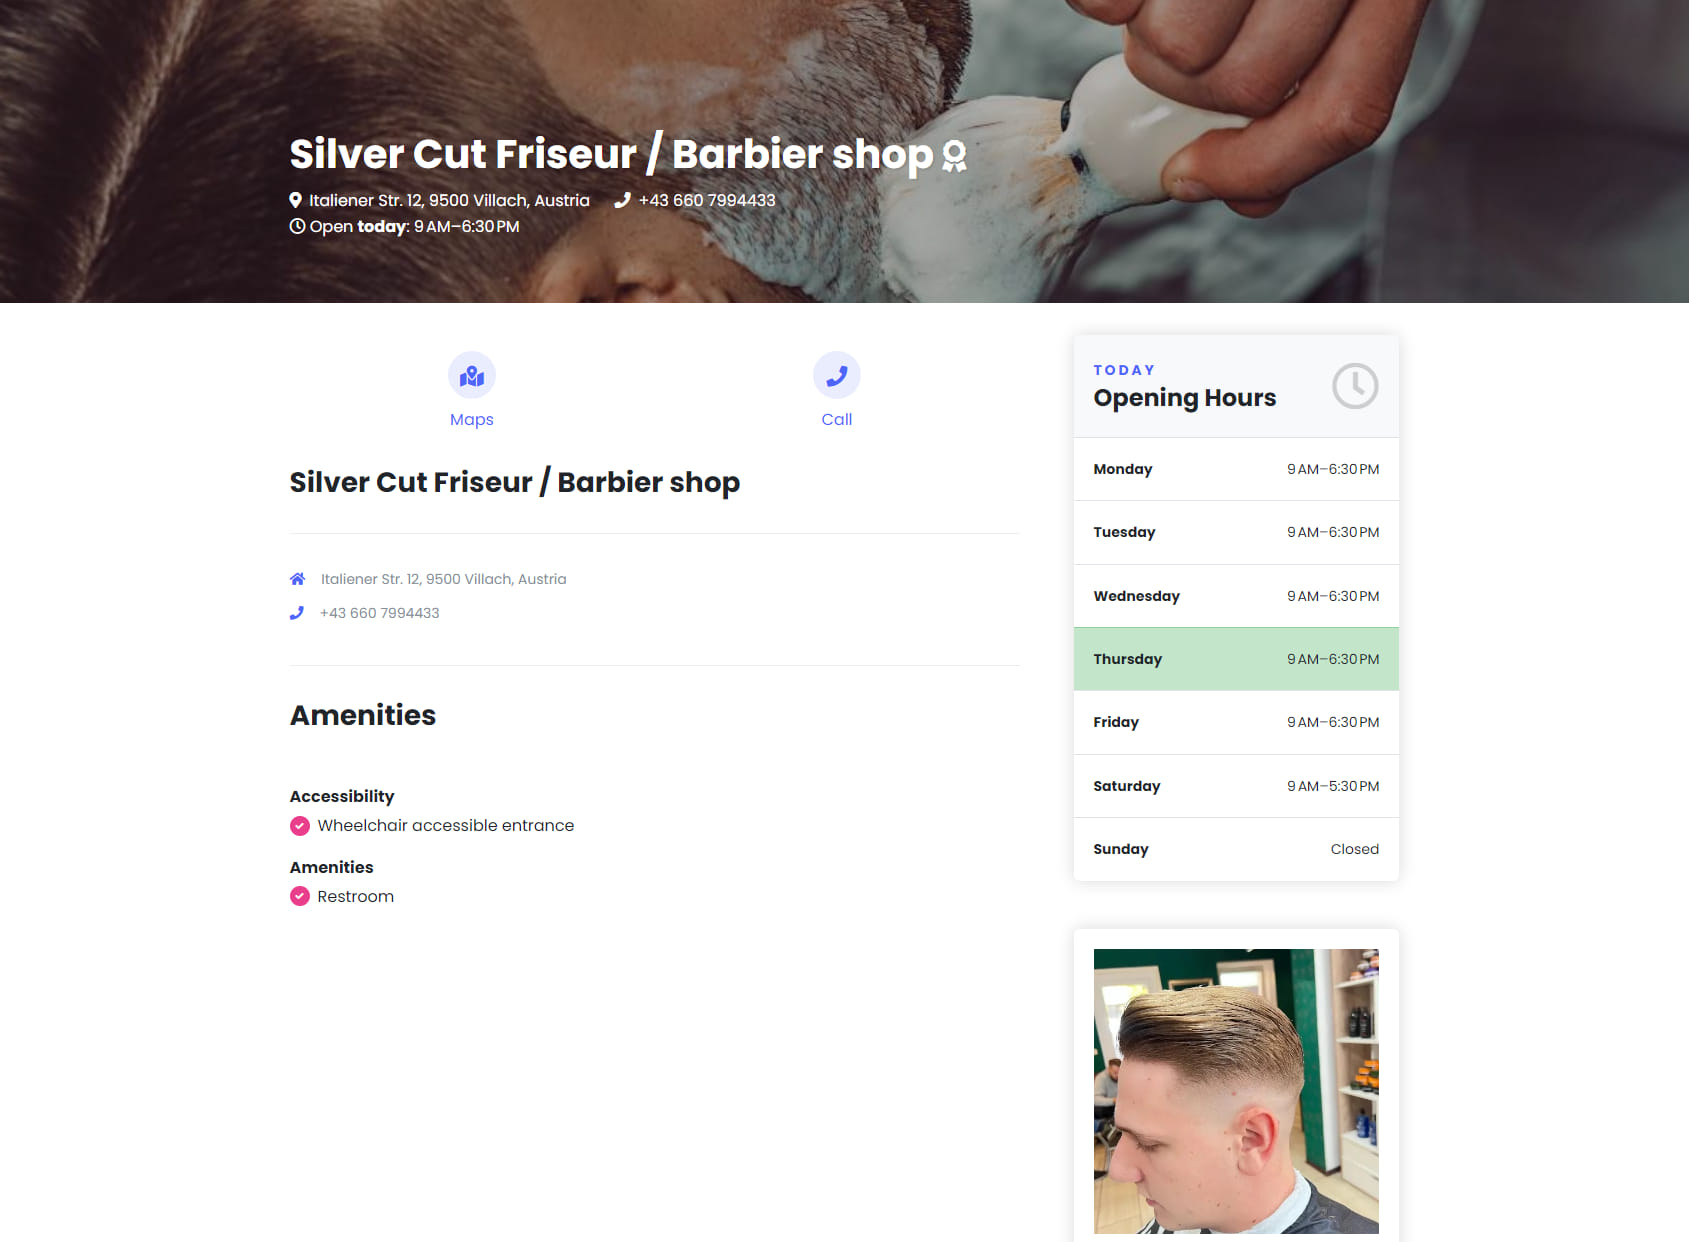 Silver Cut Friseur / Barbier shop